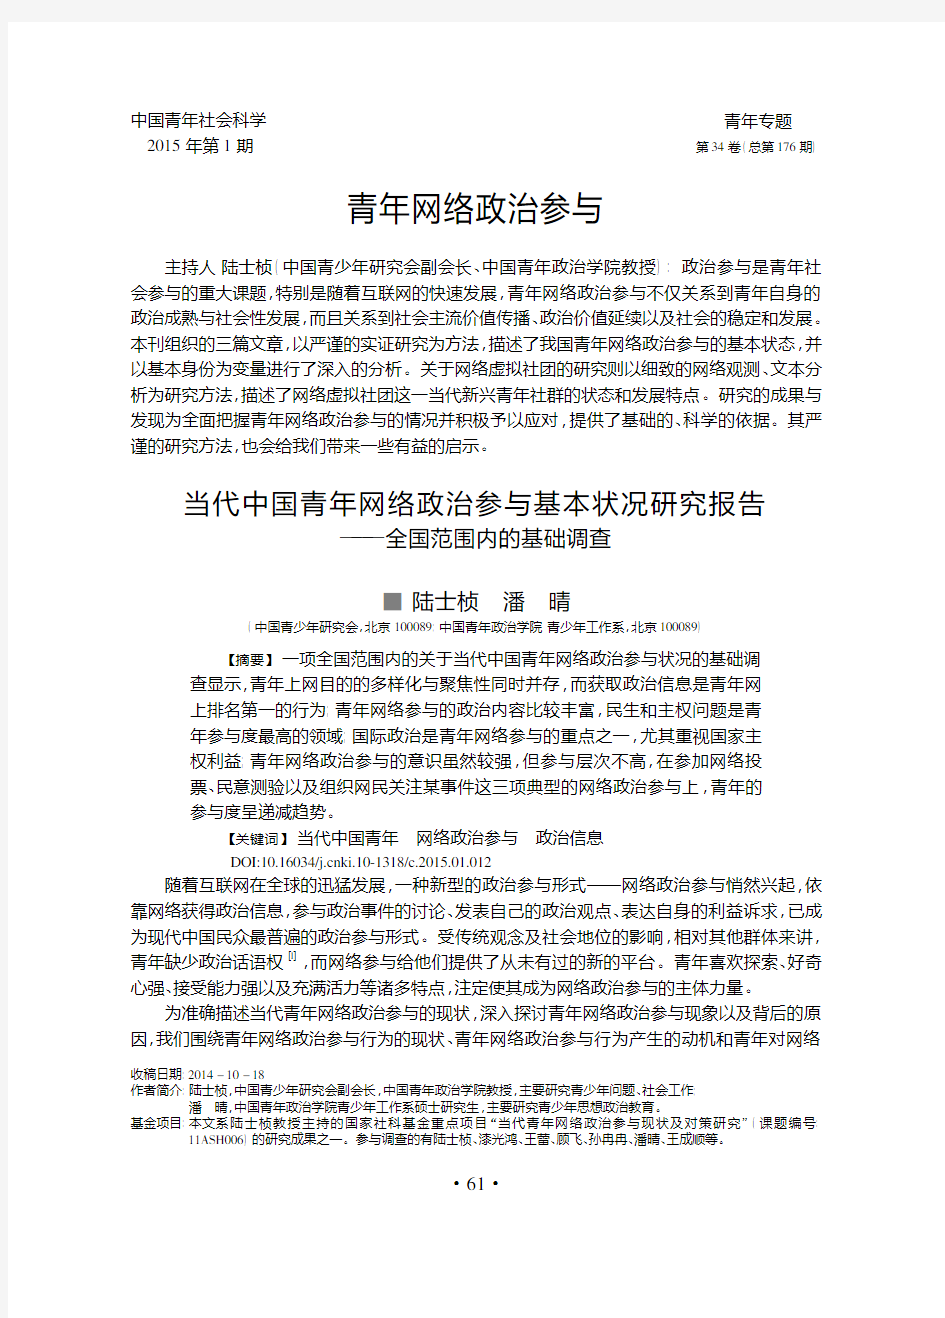 当代中国青年网络政治参与基本状况研究报告_全国范围内的基础调查_陆士桢